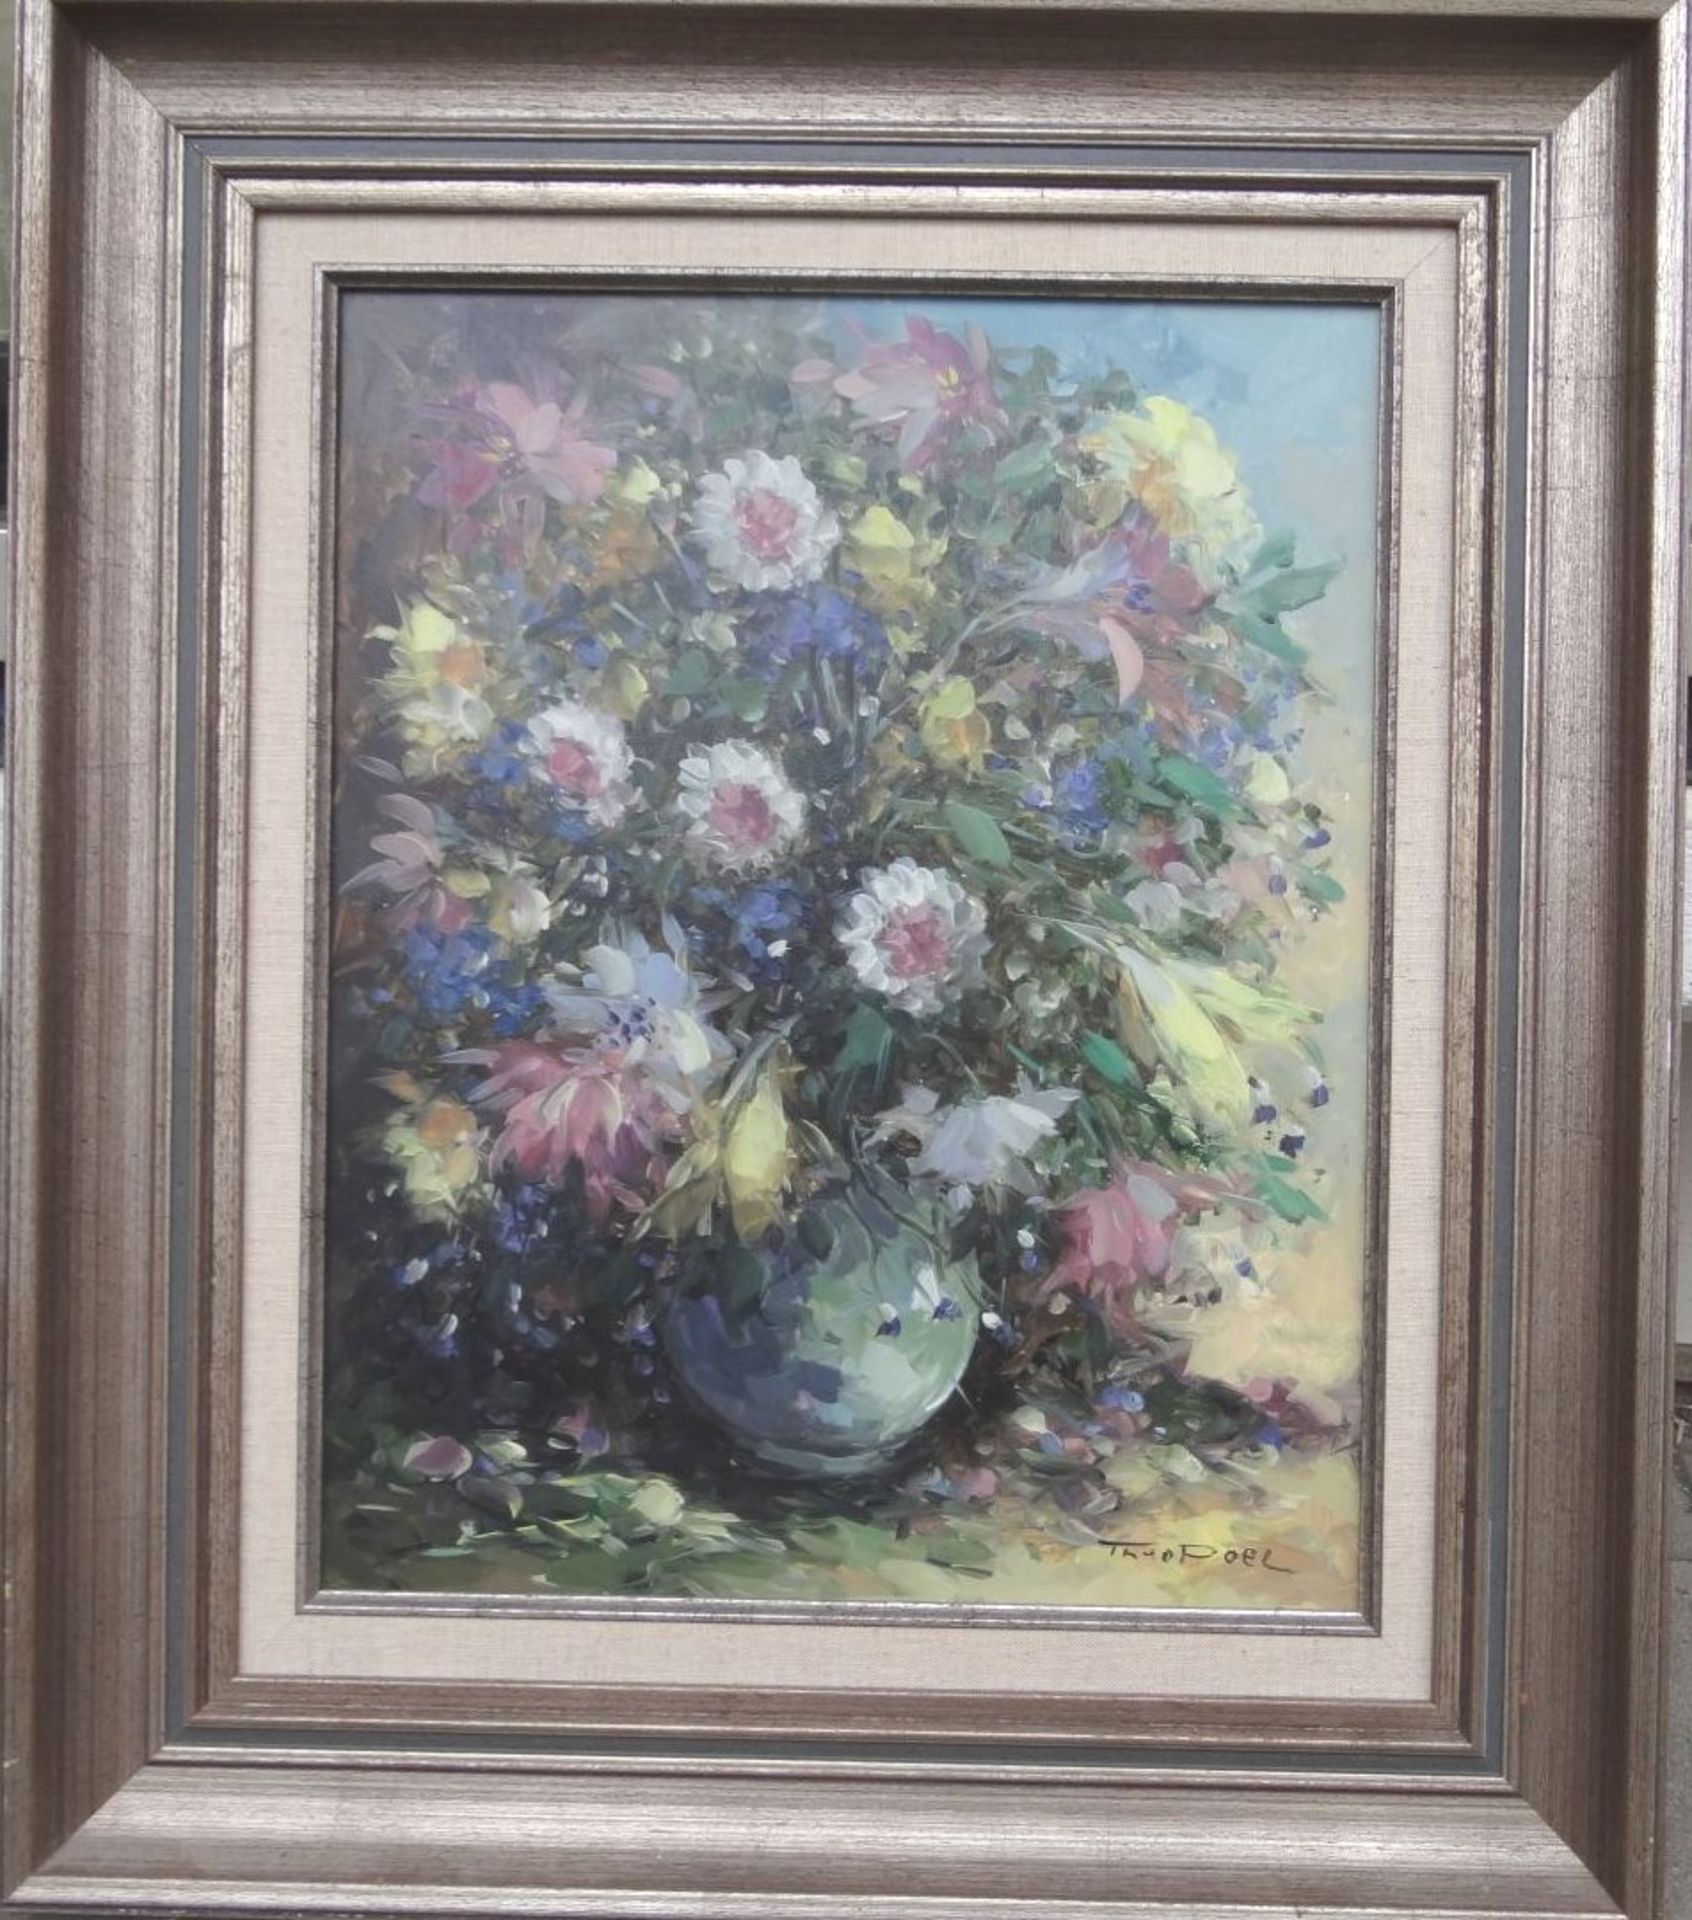 Theo VAN DER POEL (1951) "Blumen in Vase" Öl/Holz, gerahmt, RG 70x60 c- - -22.61 % buyer's premium - Bild 2 aus 5